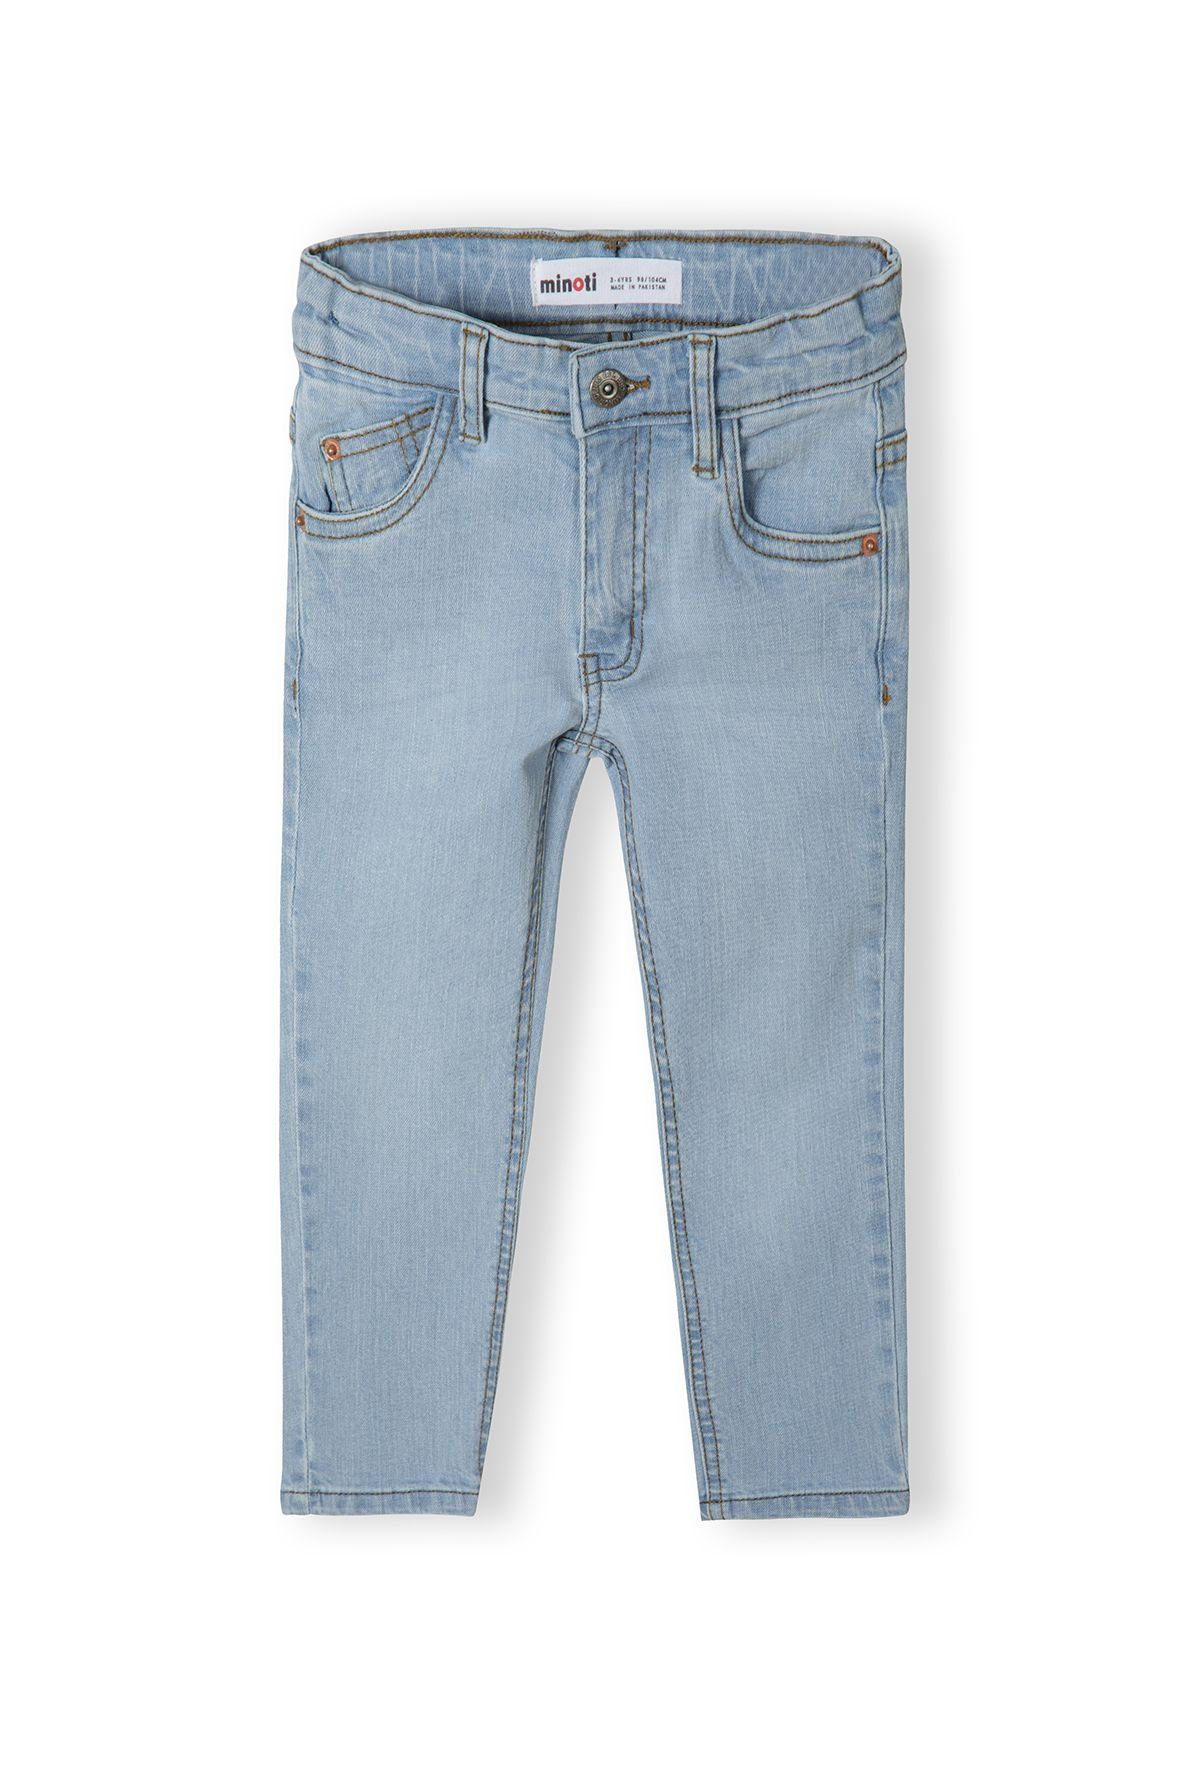 geradem Bein (12m-14y) Regular-fit-Jeans mit MINOTI Hellblau